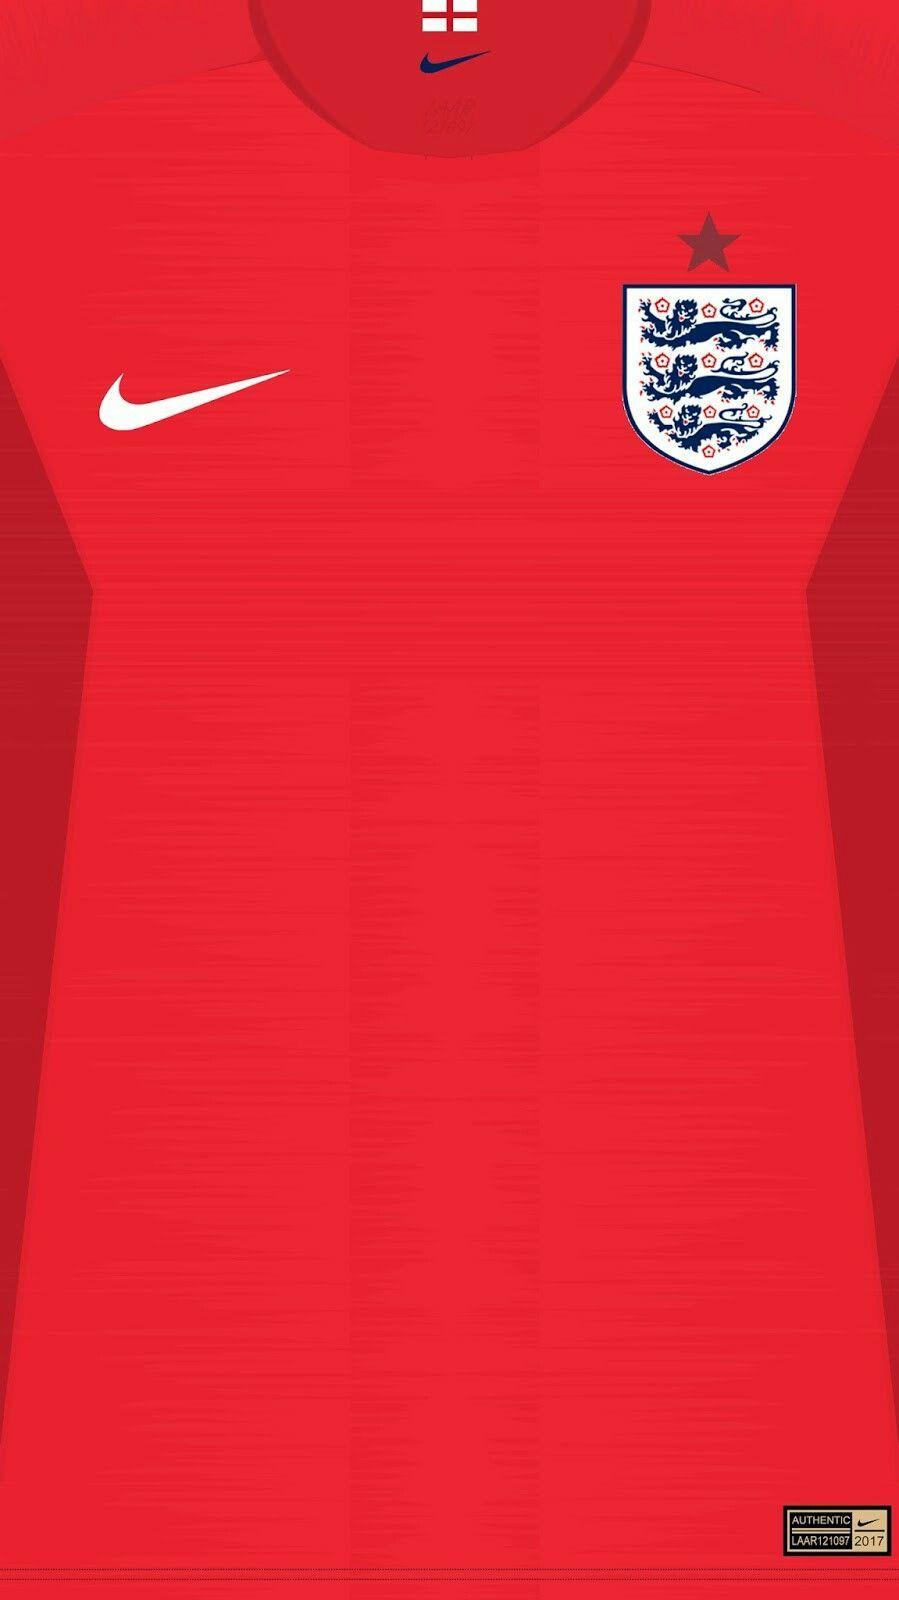 England away kit wallpaper. Camisa de futebol, Camisas de